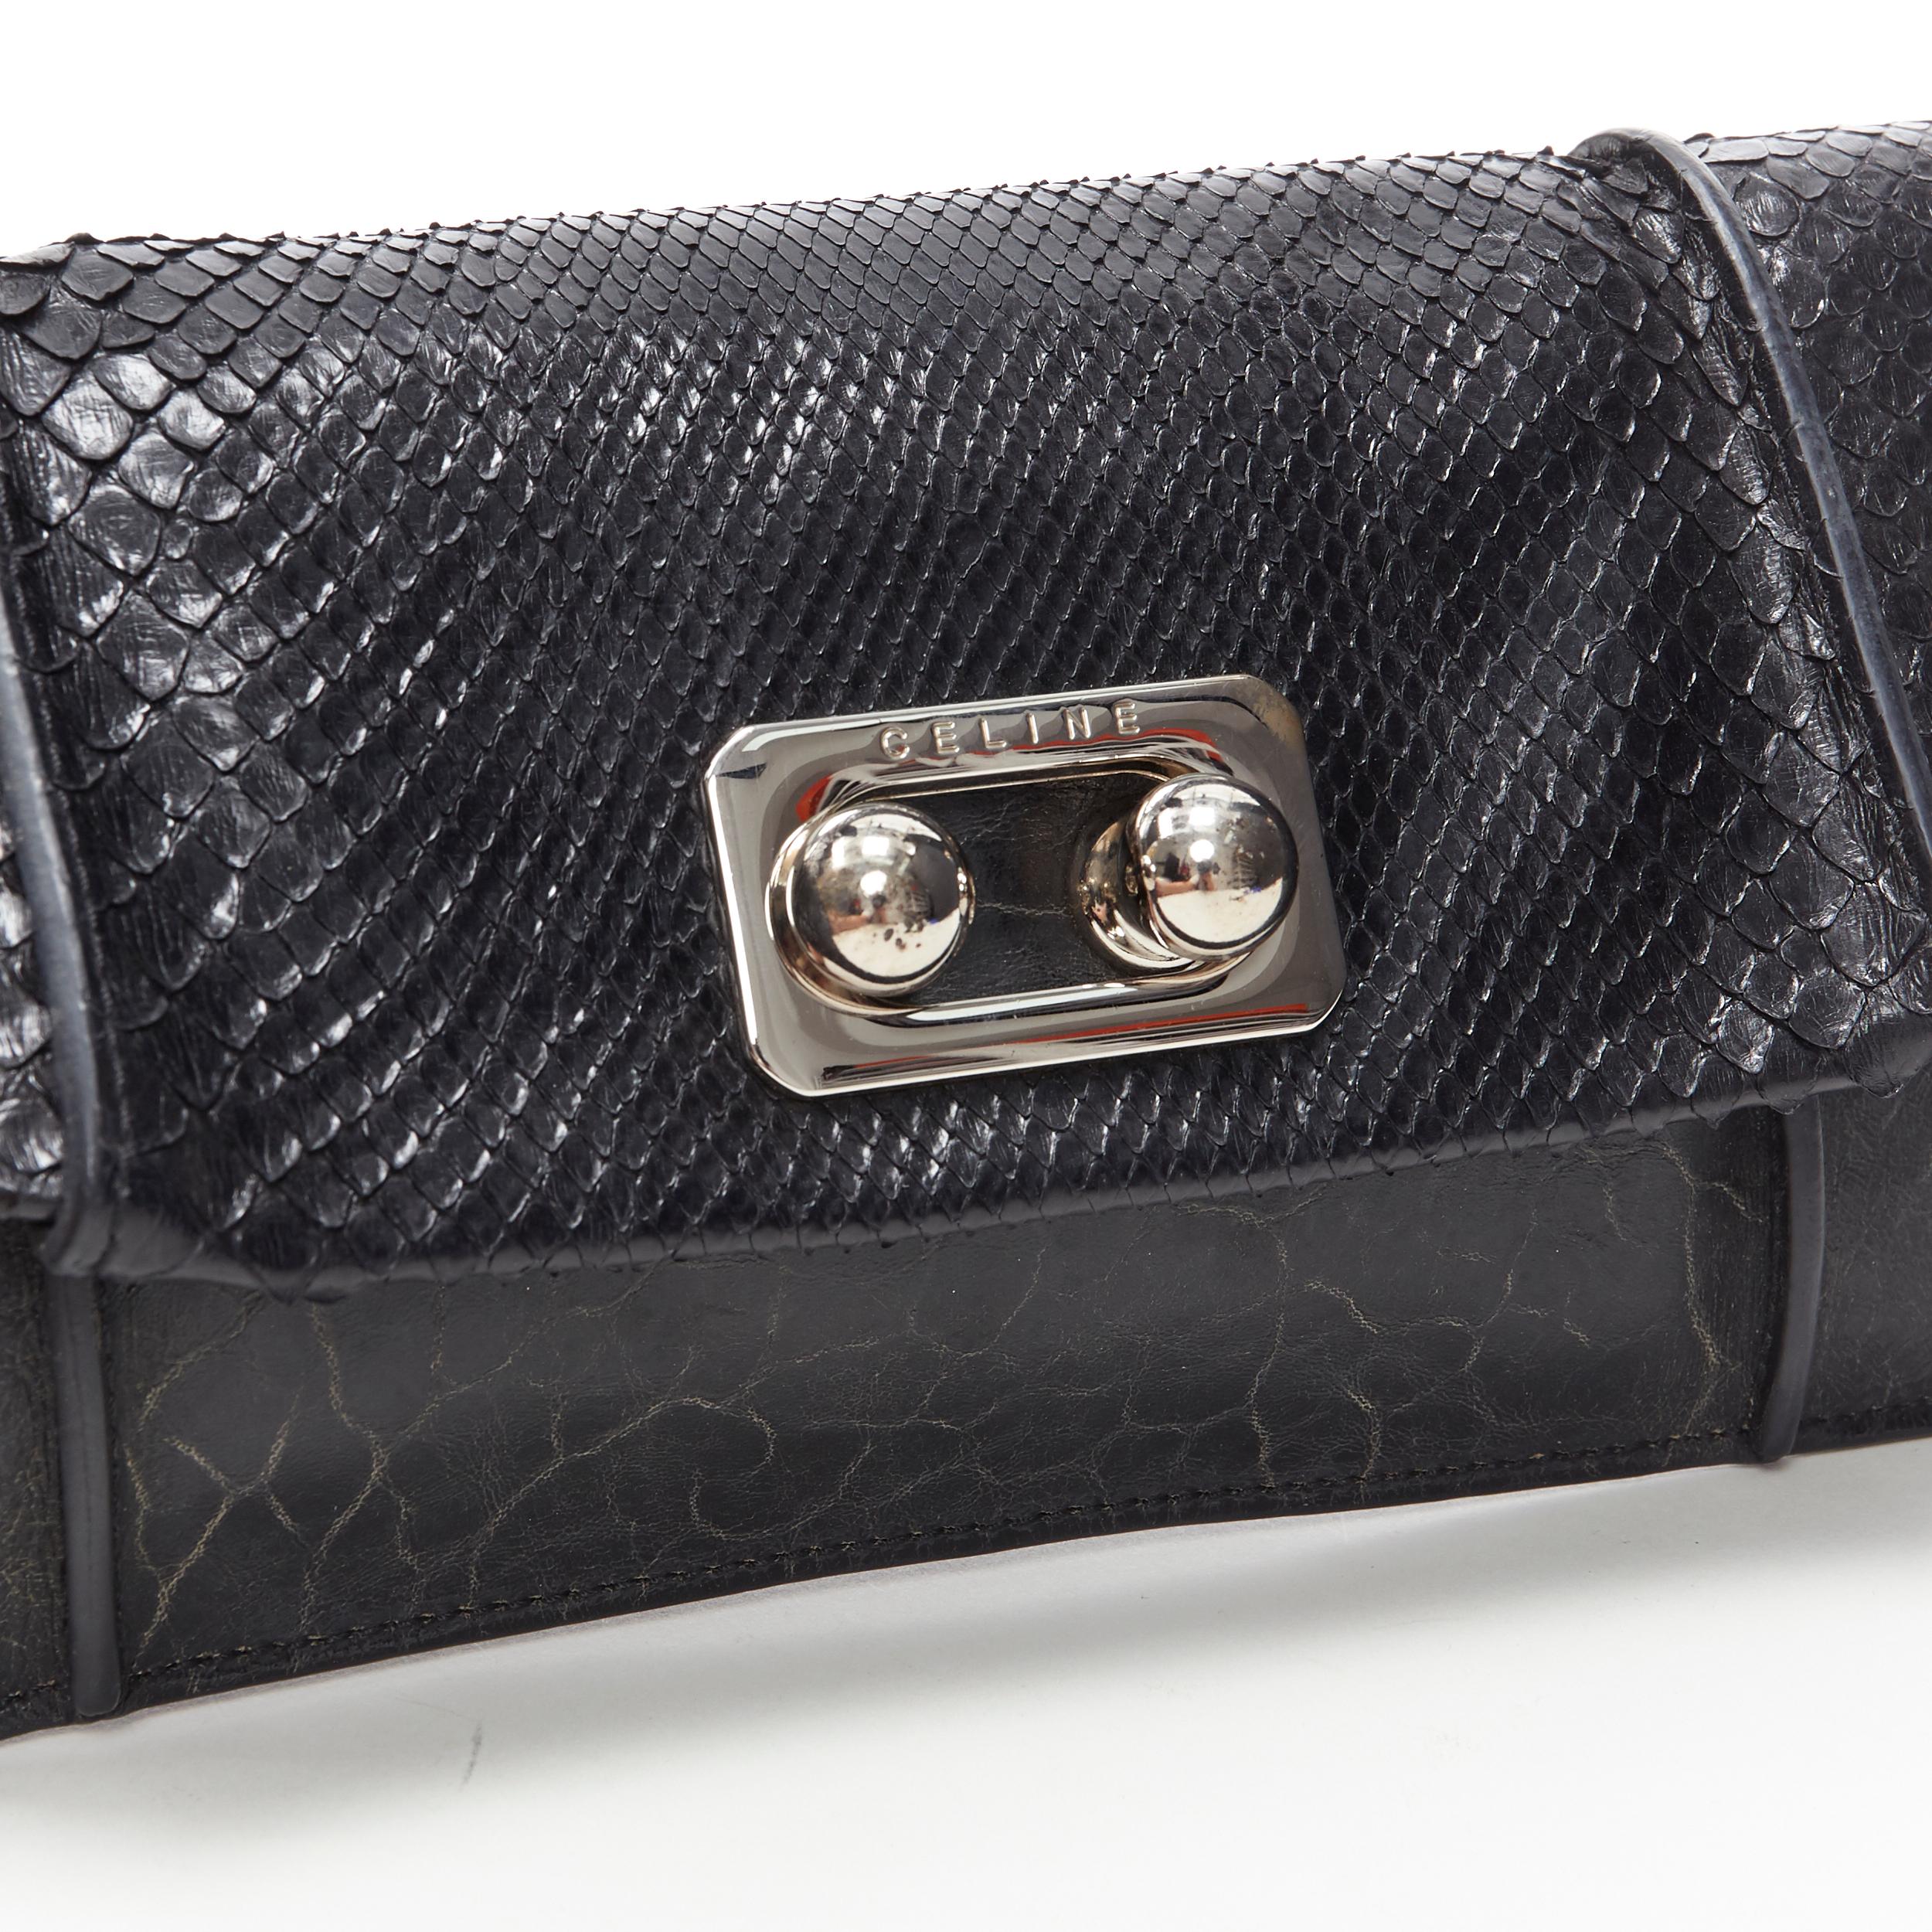 vintage CELINE black scaled leather flap silver ball buckle long clutch bag
Reference: MAWG/A00018
Brand: Celine
Designer: Phoebe Philo
Model: 